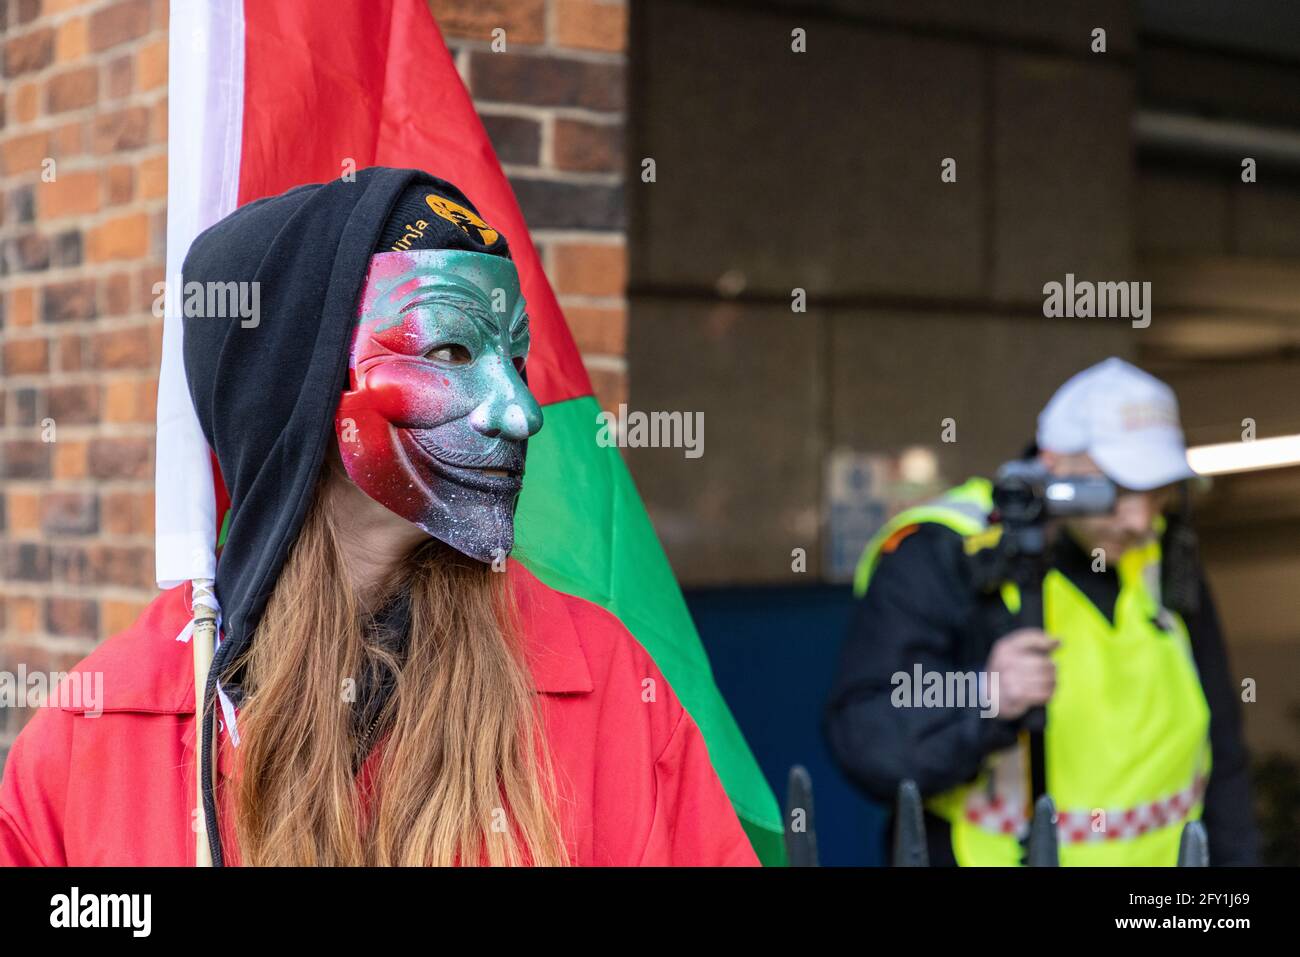 Manifestant dans un masque bloquant la caméra vidéo de la police avec drapeau, Free Palestine Protest, Ambassade d'Israël, Londres, 22 mai 2021 Banque D'Images